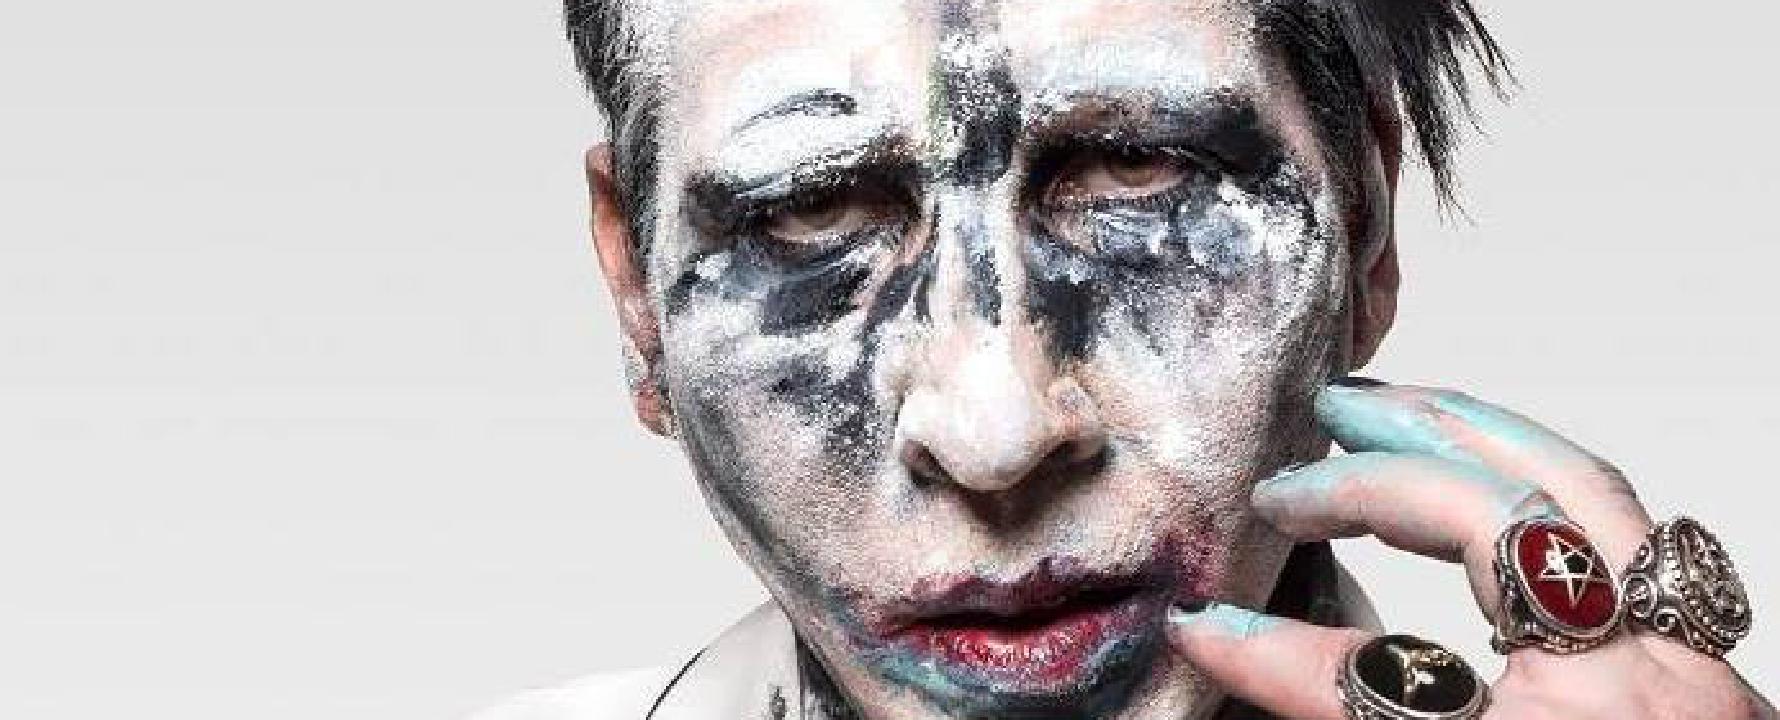 Fotografía promocional de Marilyn Manson